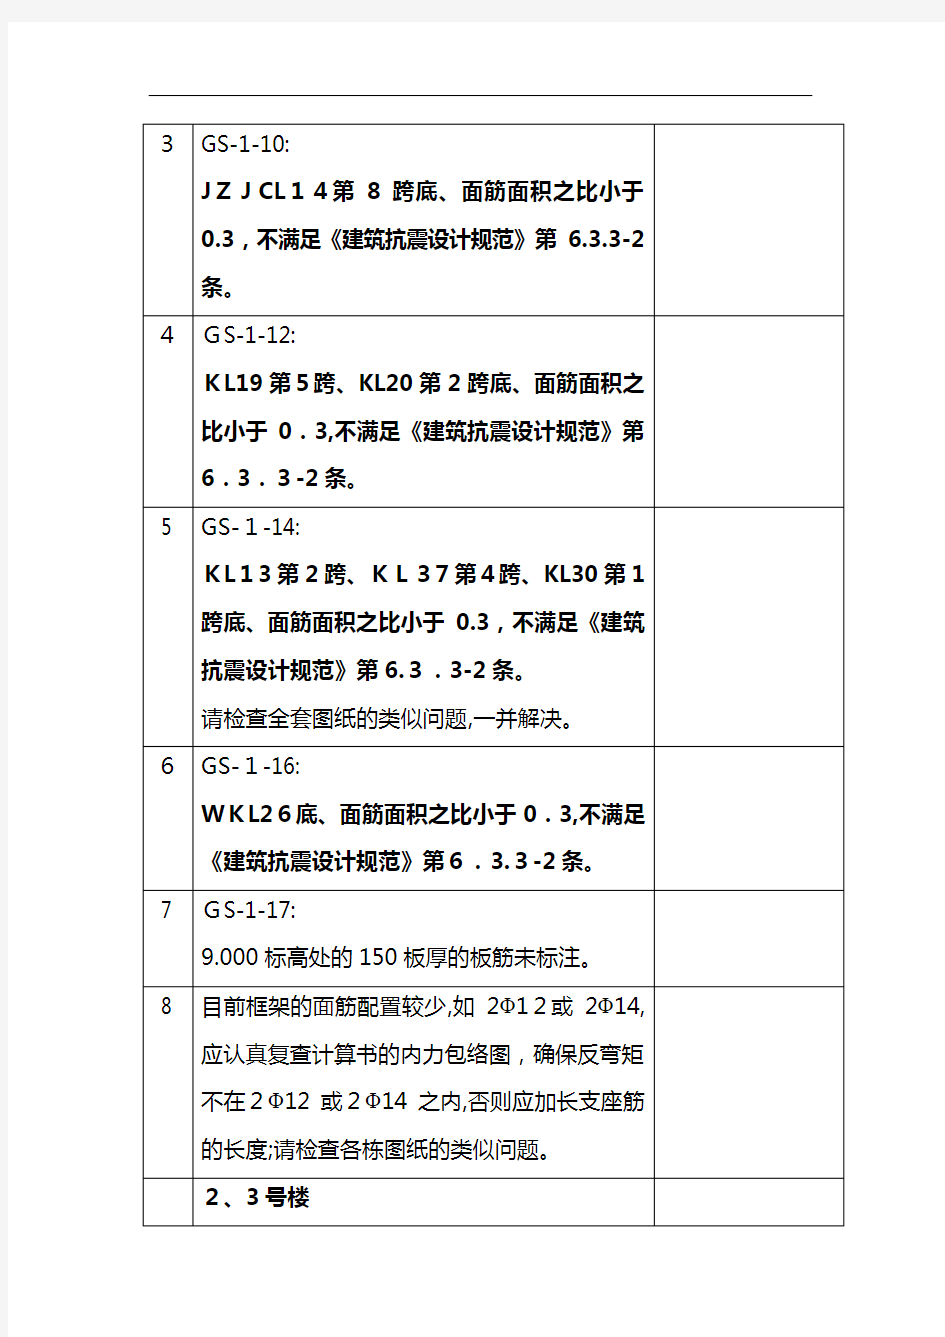 广州市建筑工程施工图设计文件审查意见表